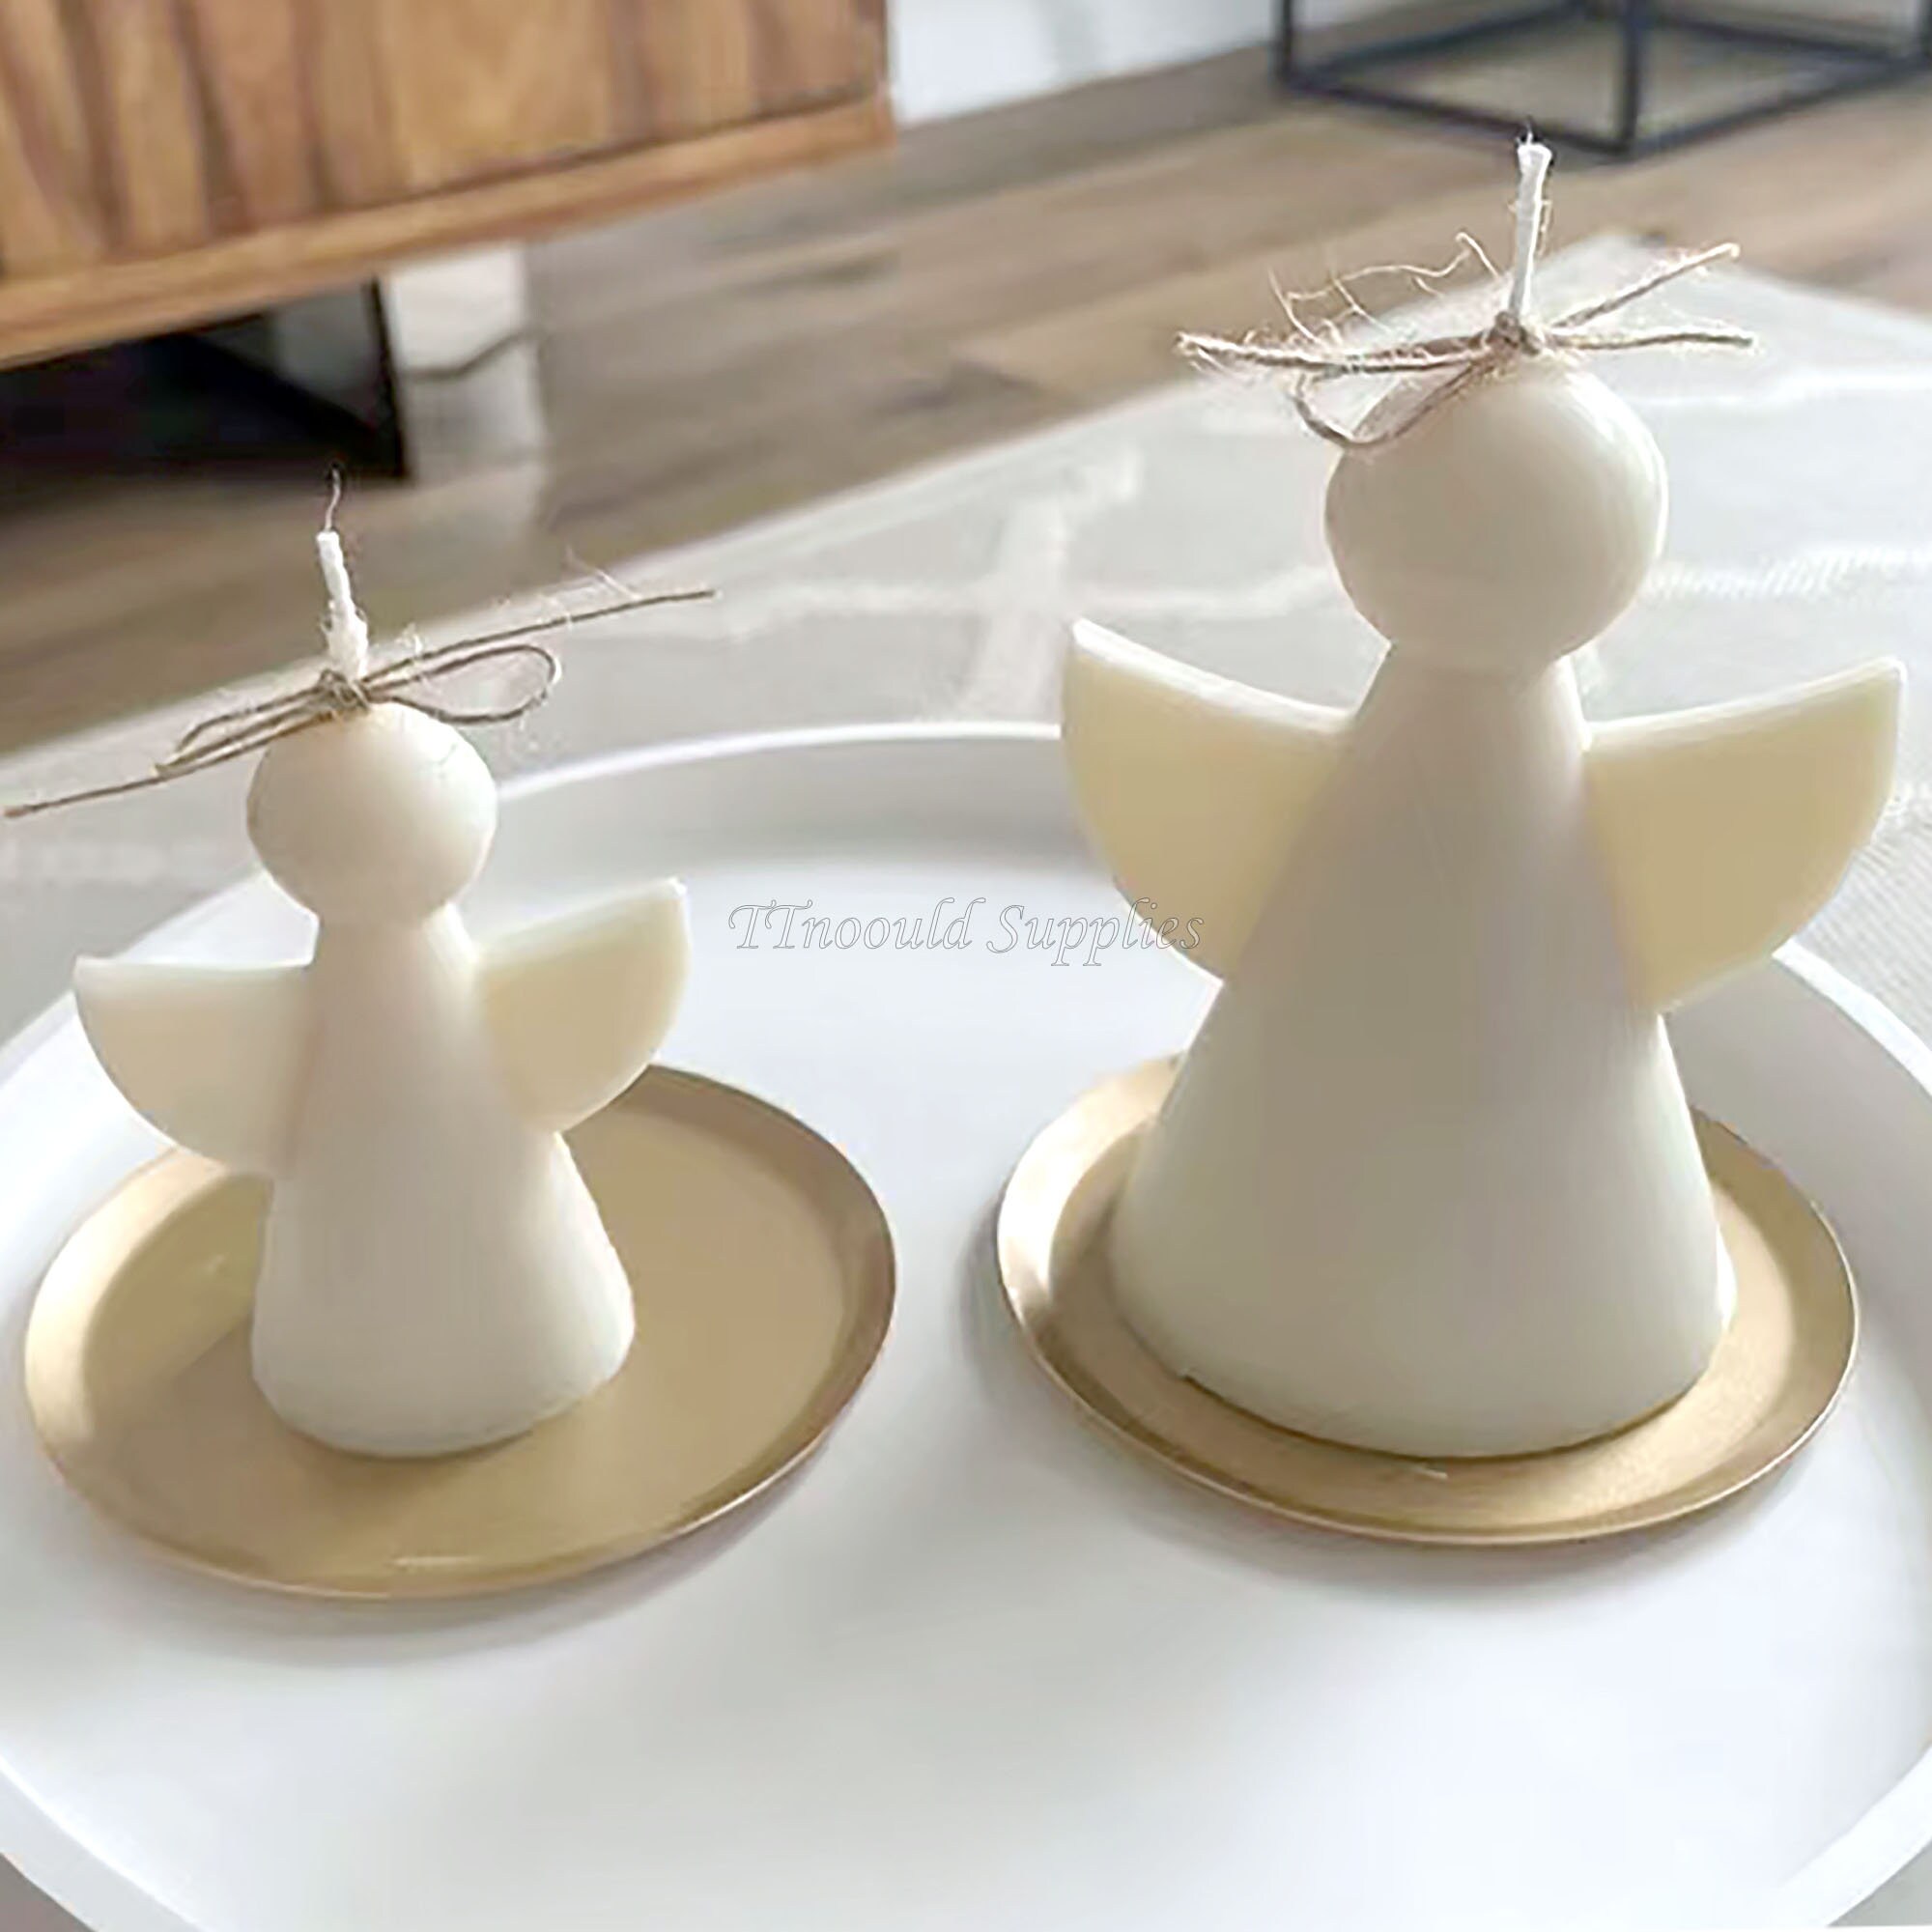 Amazing Fashion Single Magic Silicone Mold Creative Silikonform Mousse Cake Mold DIY Bubble Candle Aromatherapy Candle Handmade Kerze Soap Mold (Small), White